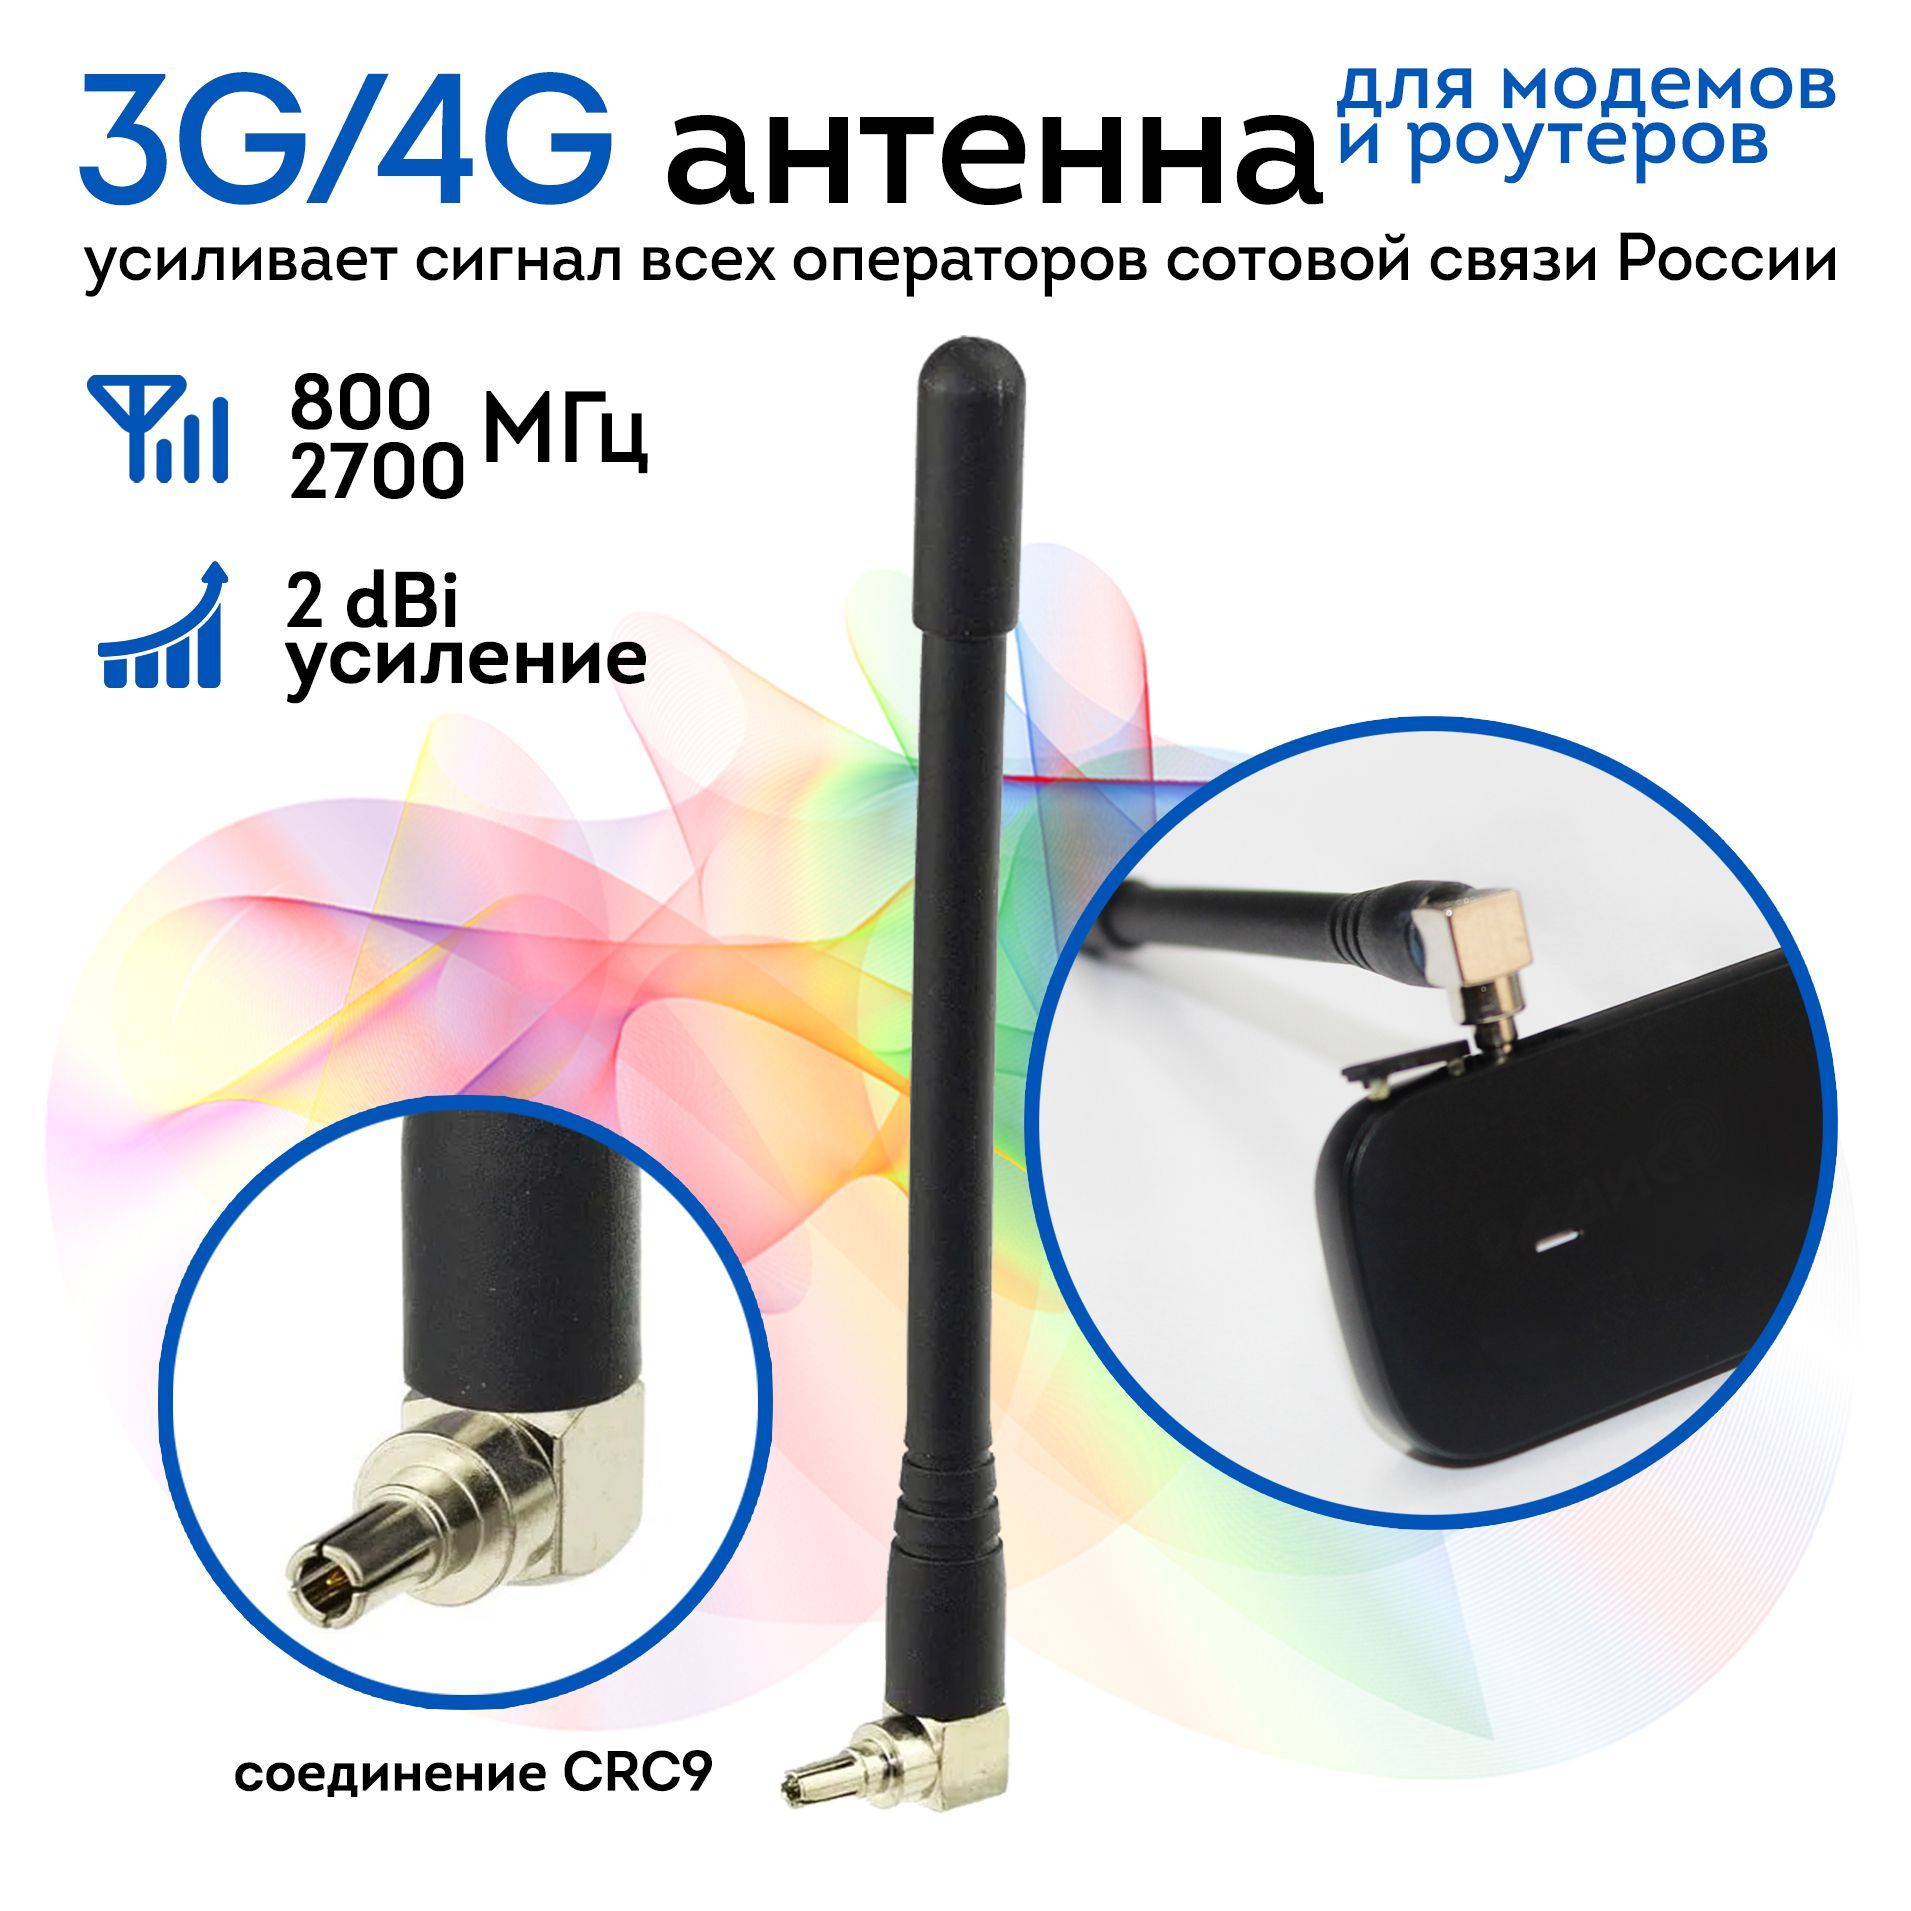 Как подключить внешнюю антенну к 3G/4G модему? | Интернет-магазин вороковский.рф